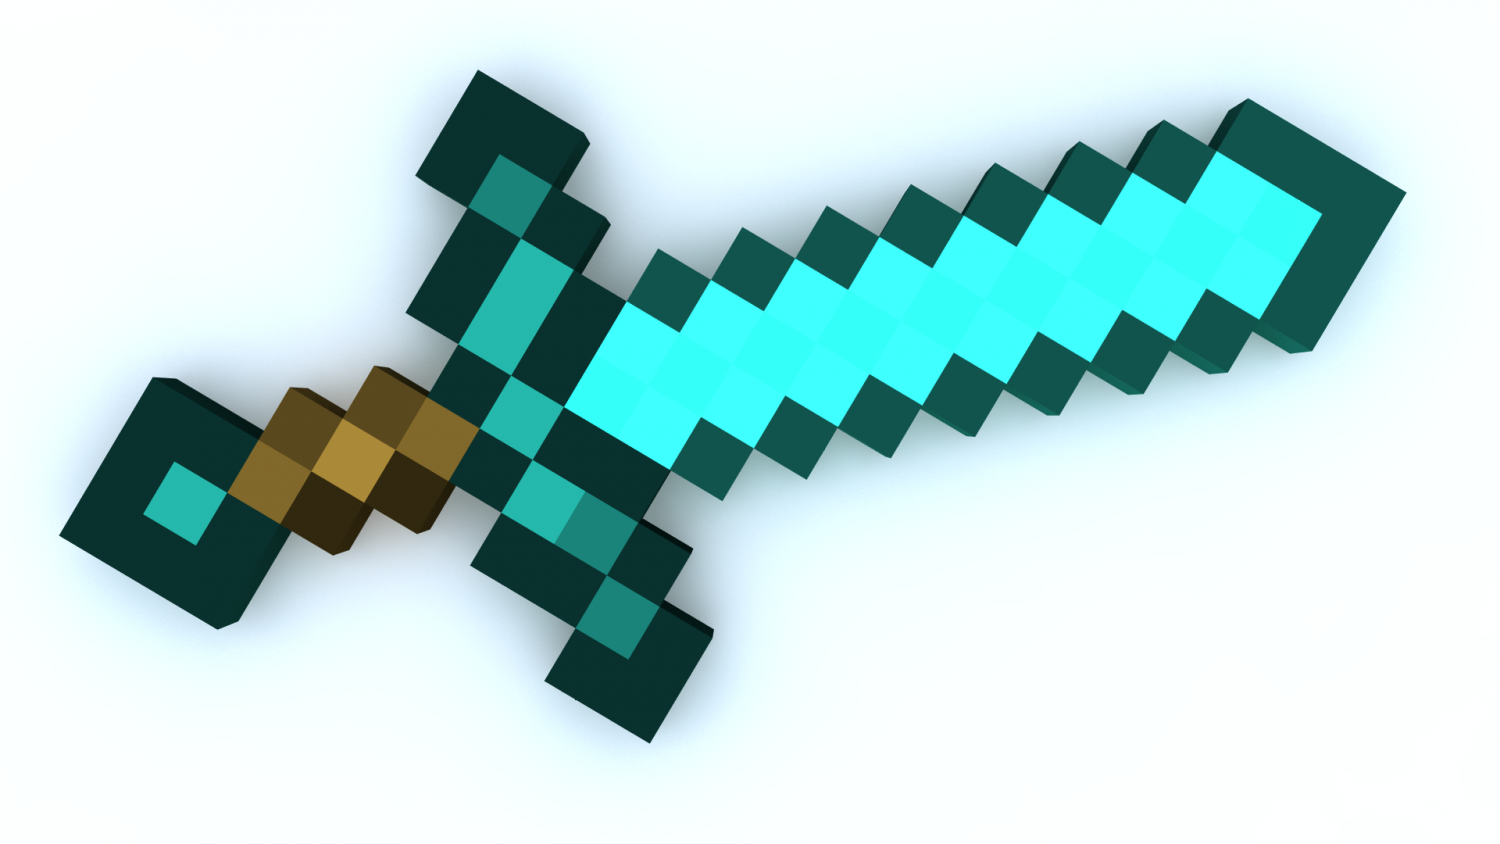 Красивый меч майнкрафт. Алмазный меч. Minecraft меч. Меч из МАЙНКРАФТА. Алмазный меч из МАЙНКРАФТА.